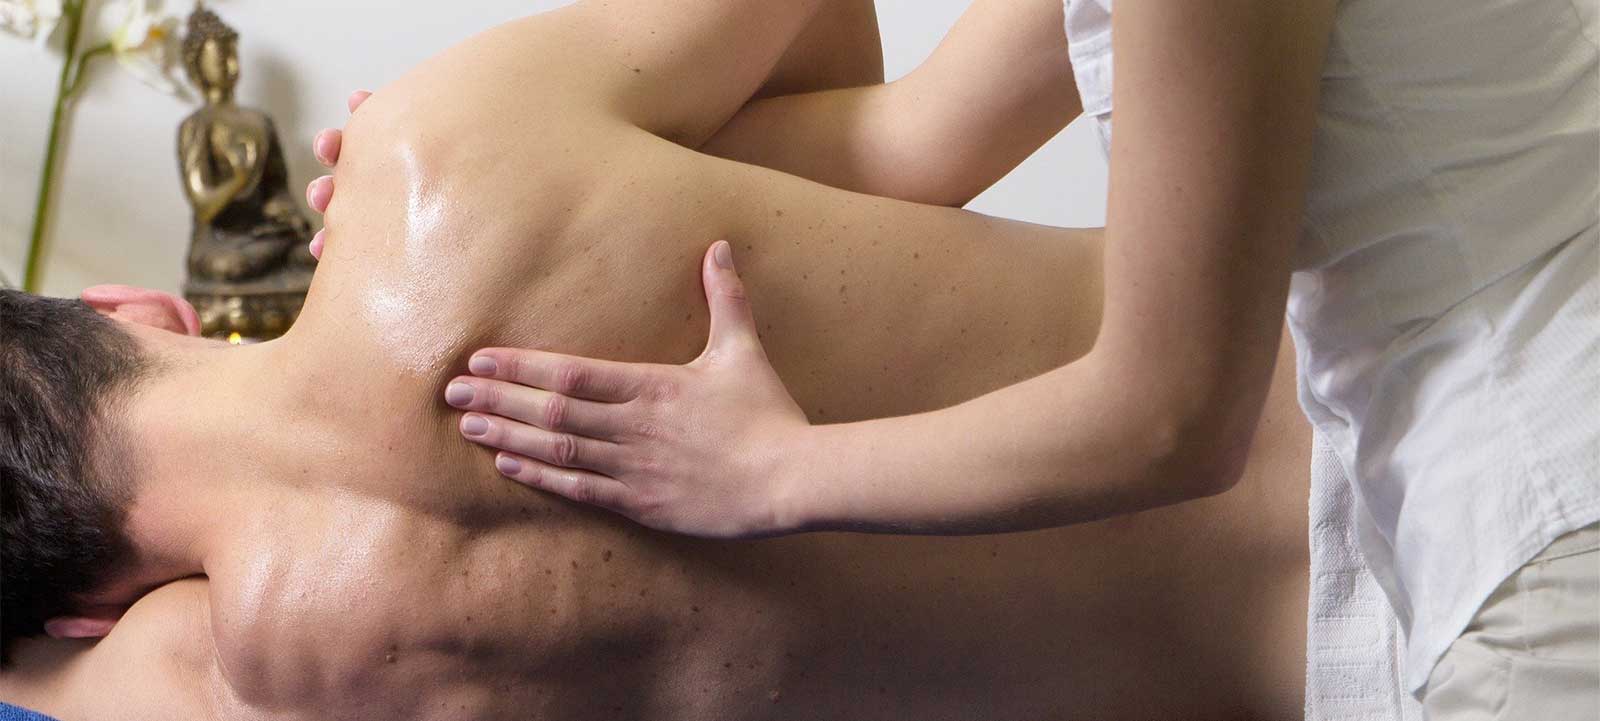 Dolor de espalda media o alta: Síntomas y remedios